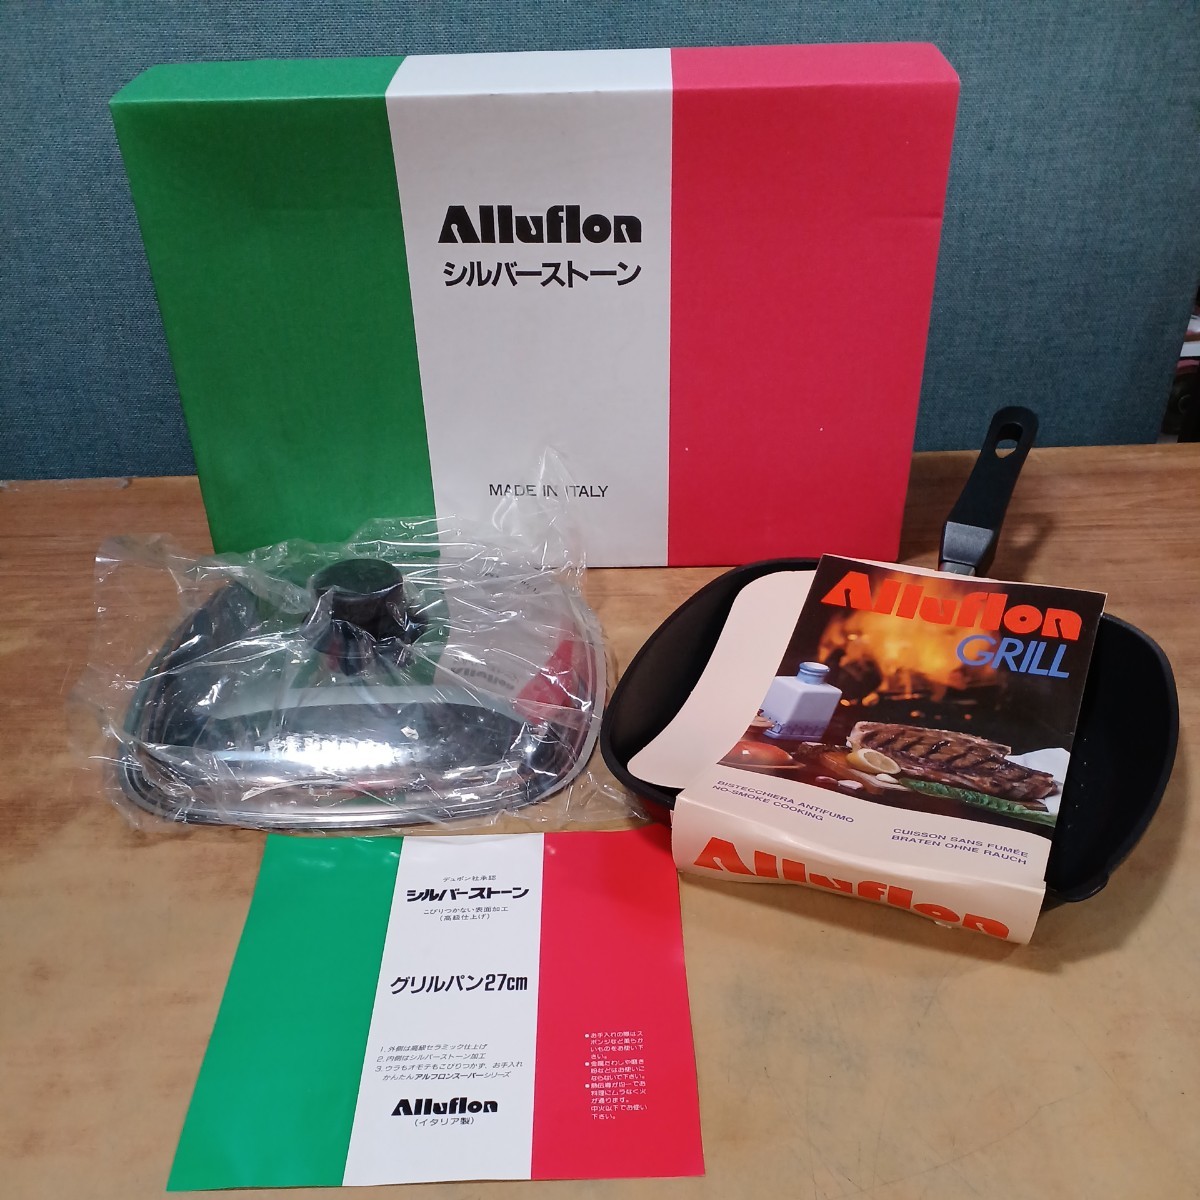 Alluflon シルバーストーン マルチグリドル 27cm MADE IN ITALY イタリア製 デュポン社承認 アルフロン グリルパン27cm 未使用品 保管品_画像1